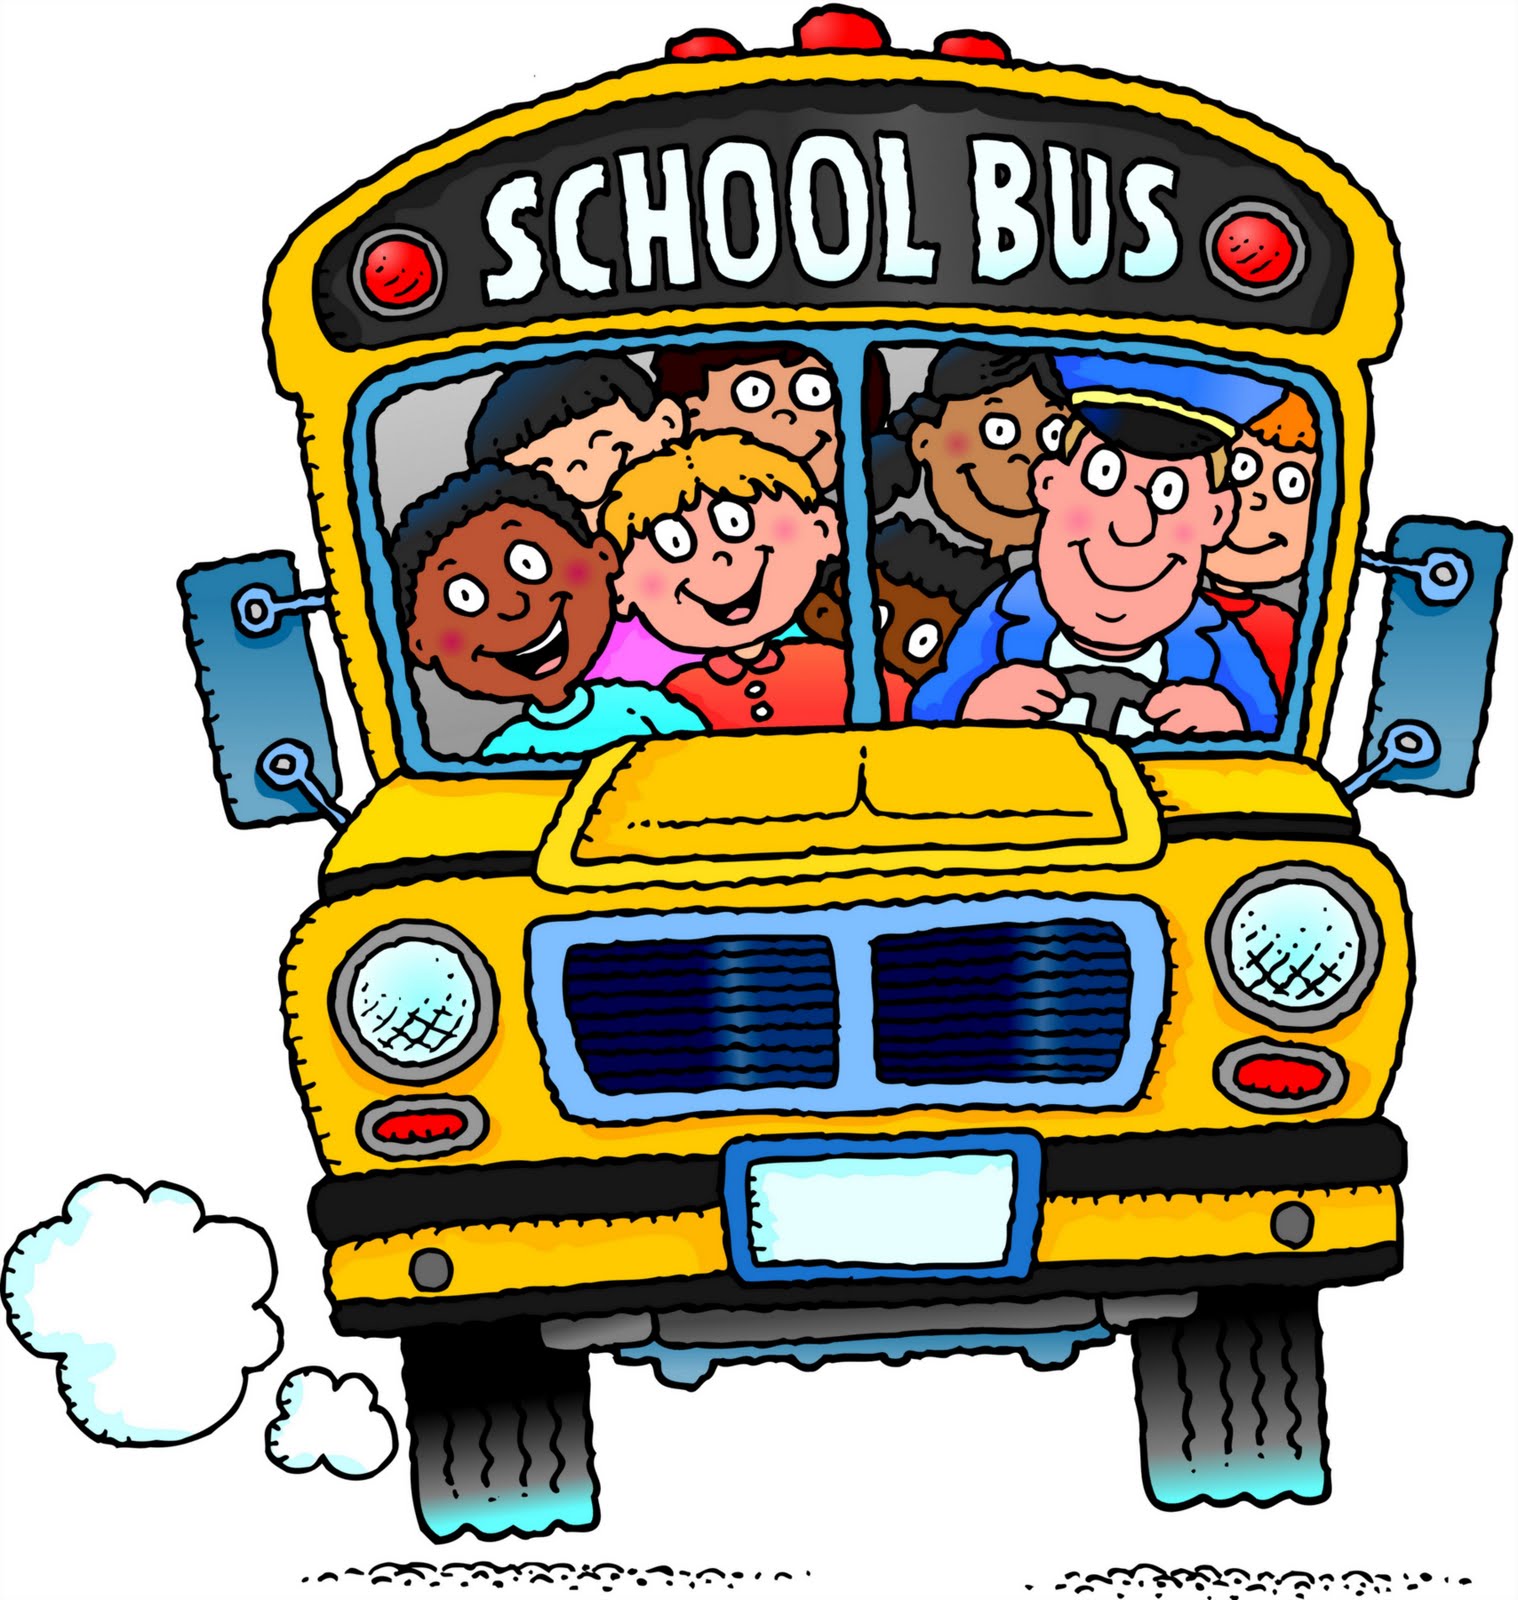 Image School Bus